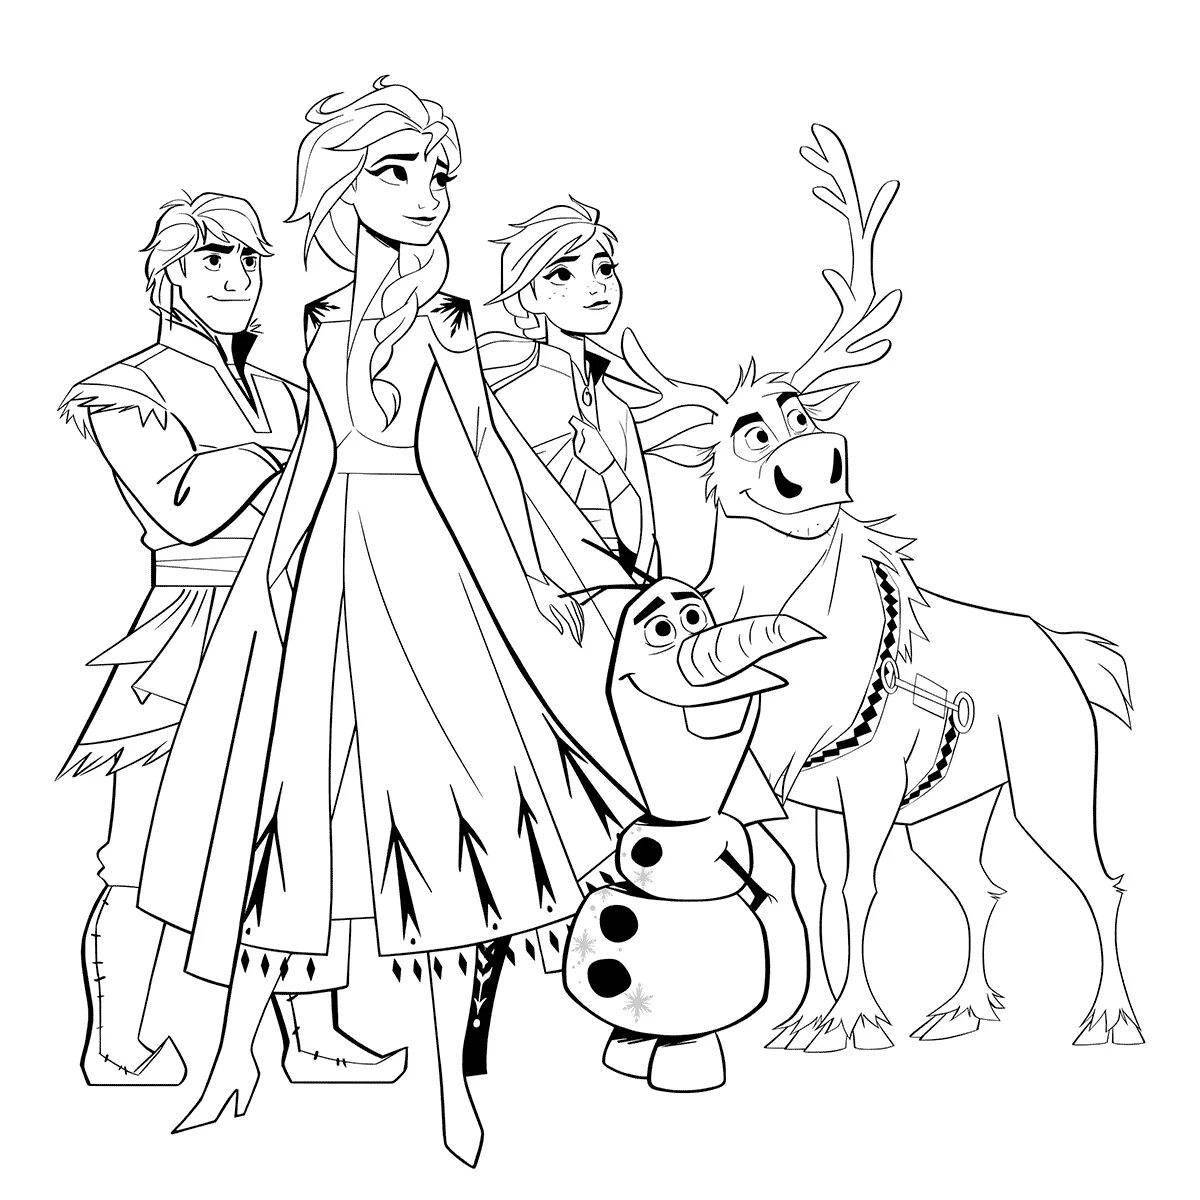 Fun coloring drawing of Elsa